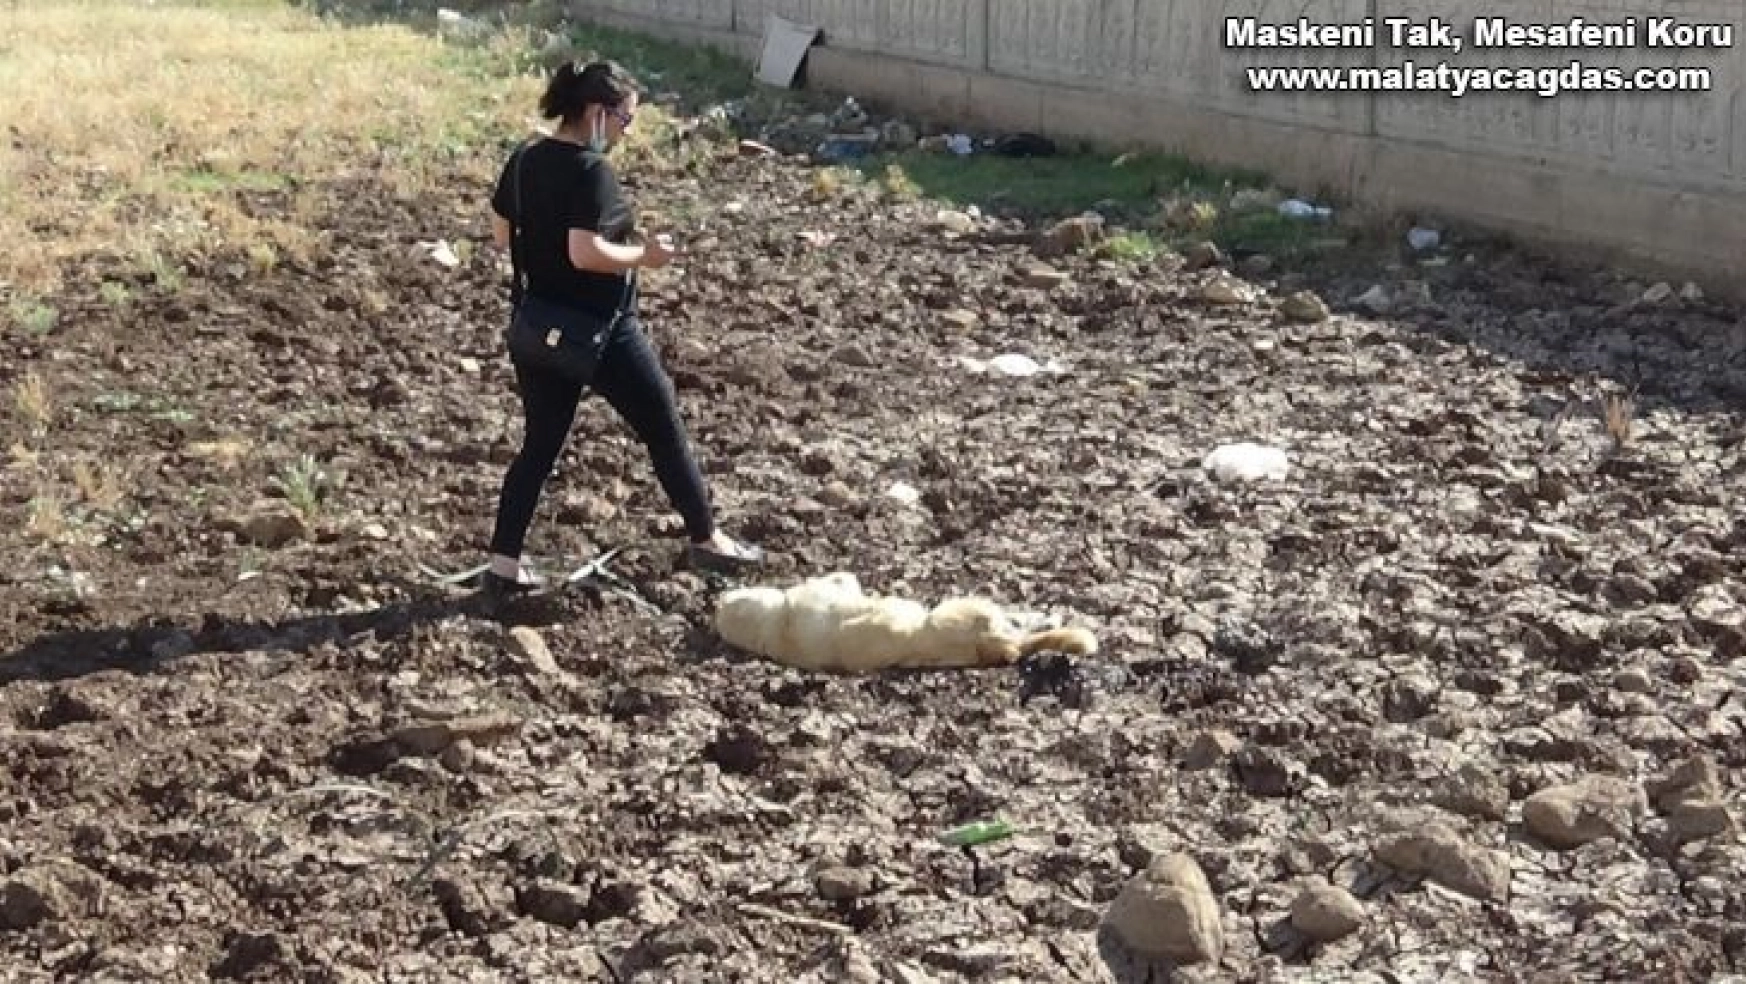 Diyarbakır'da bir köpek boynuna ip bağlanarak vahşice öldürüldü